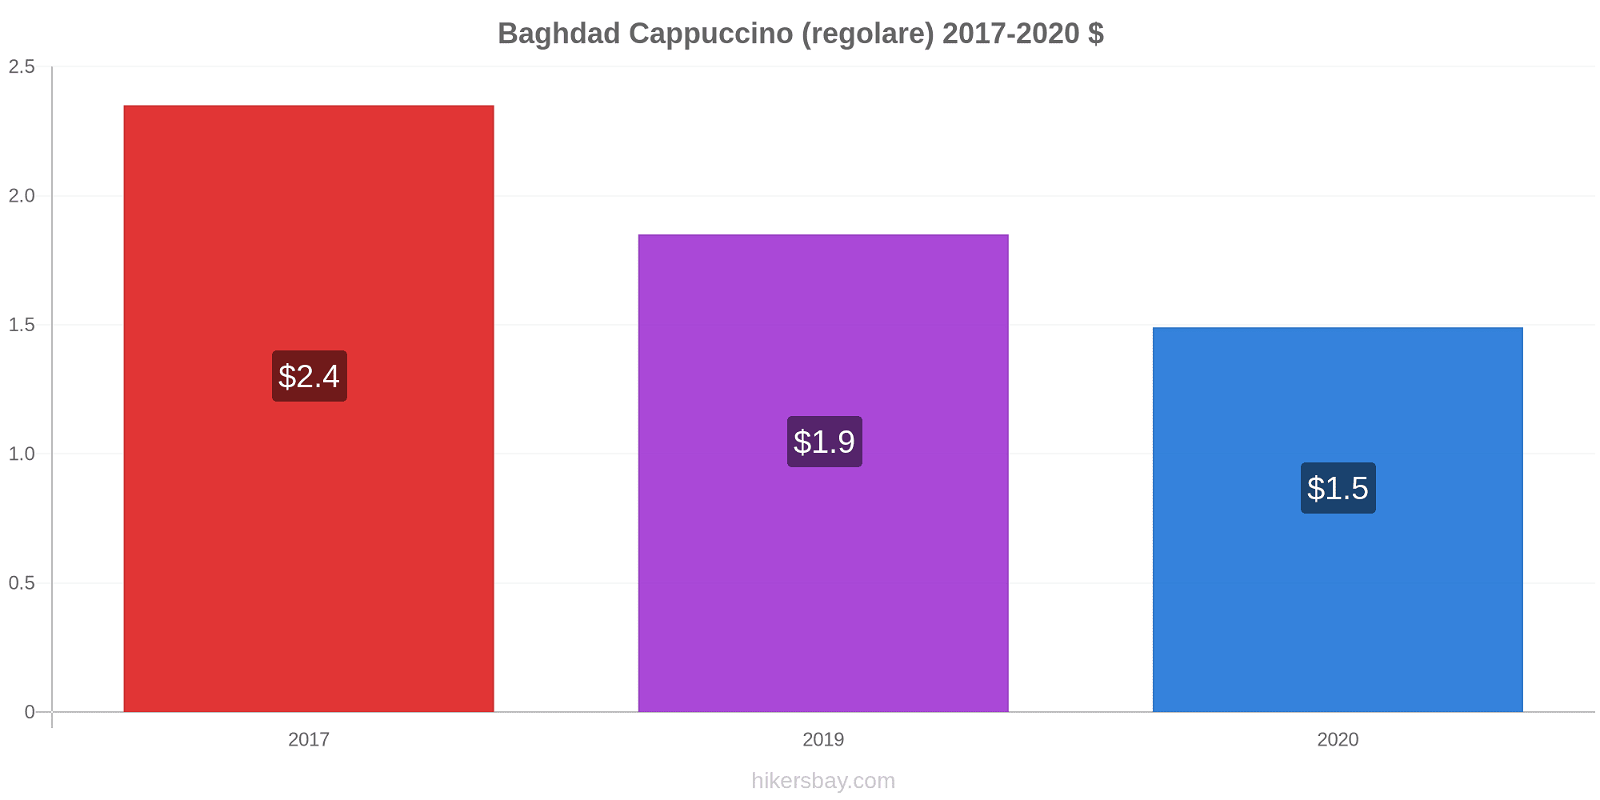 Baghdad variazioni di prezzo Cappuccino (normale) hikersbay.com